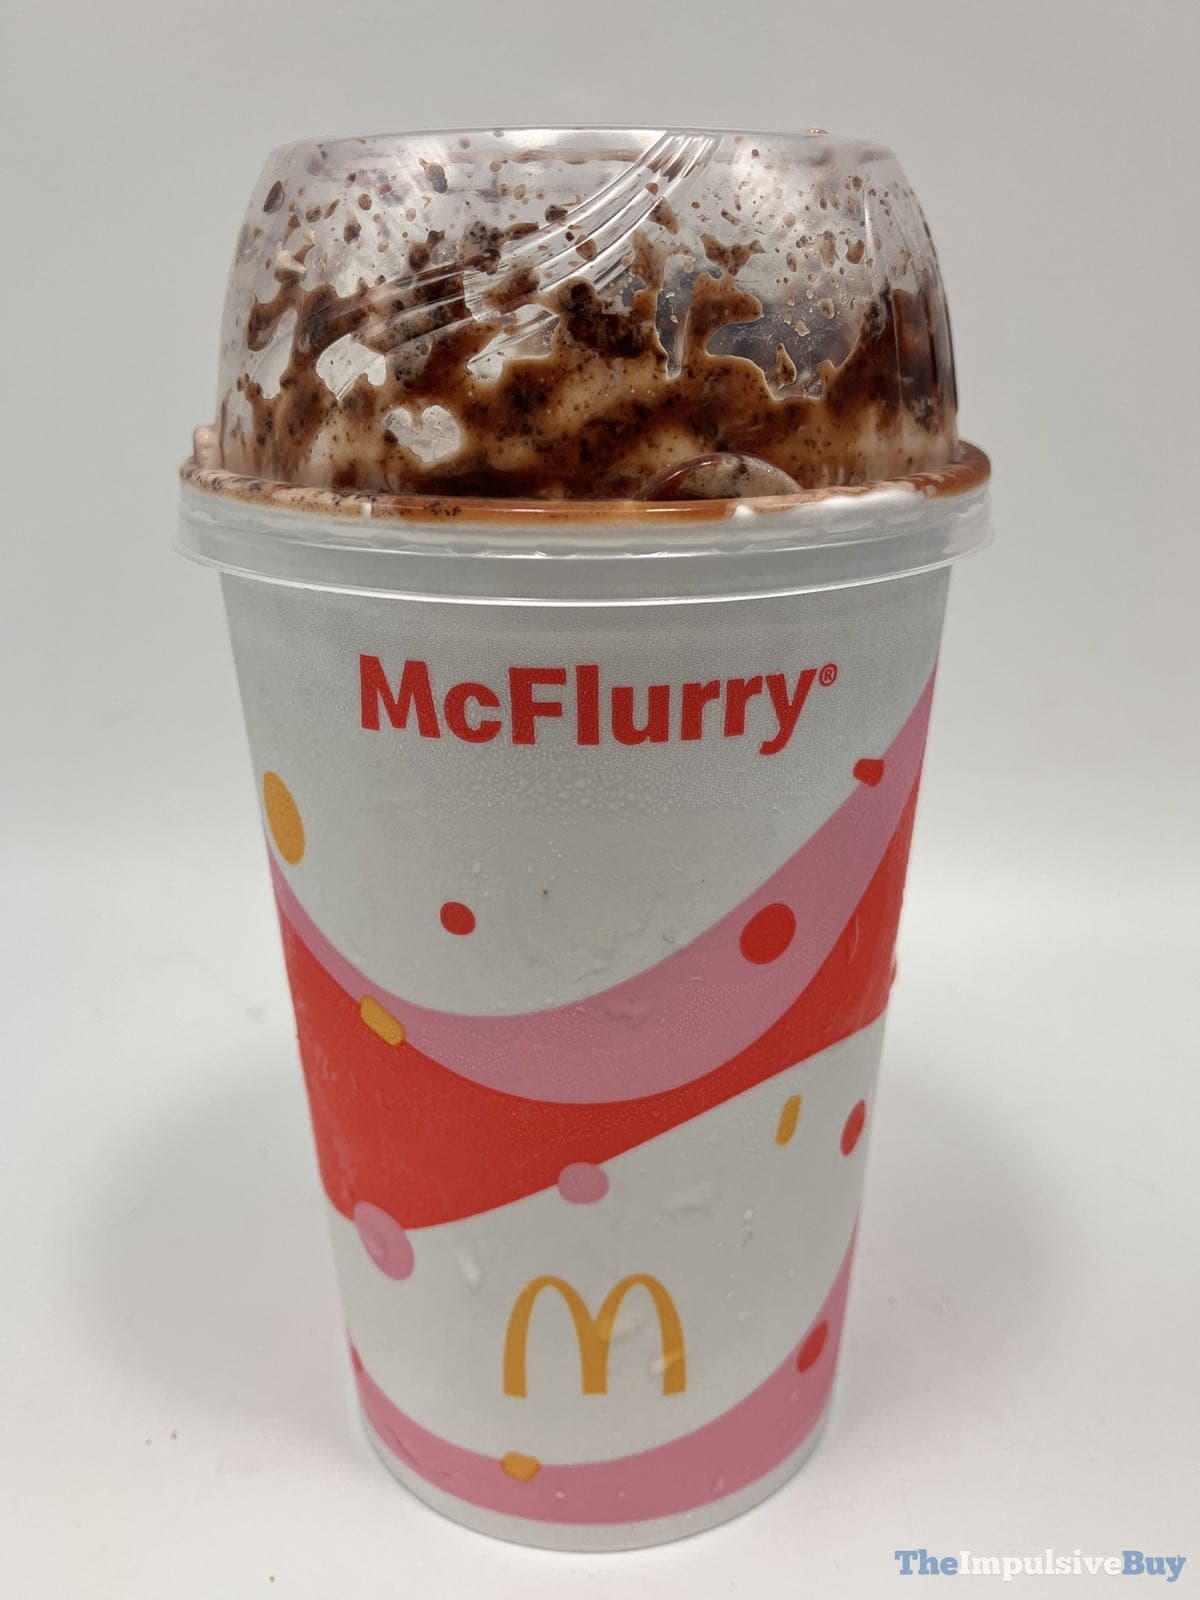 REVIEW McDonald's Oreo Fudge McFlurry googlechrom.casa